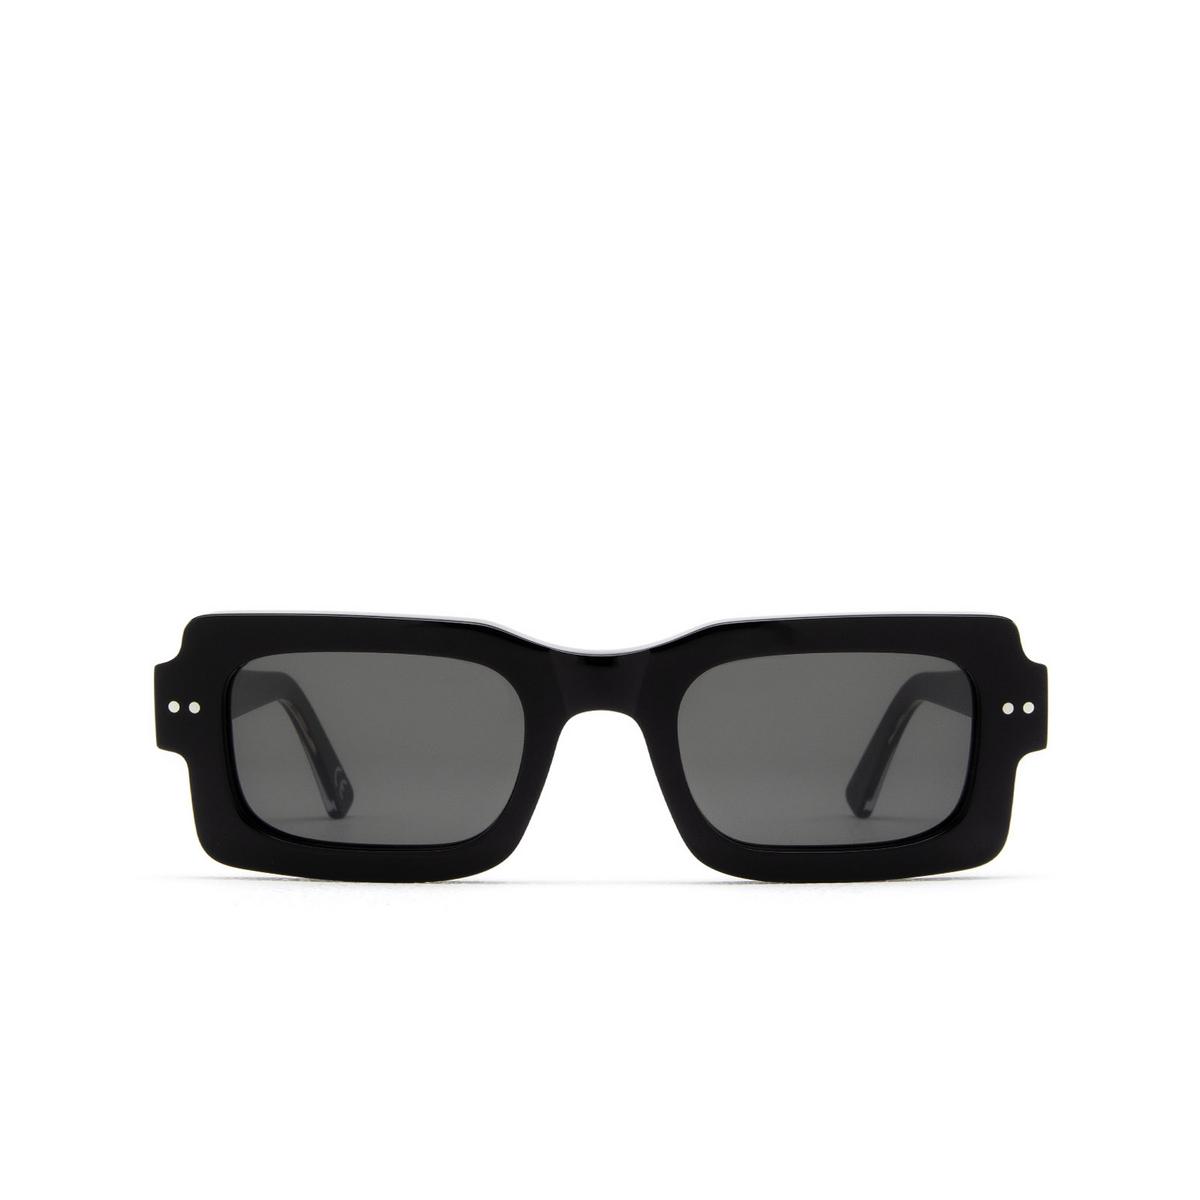 Marni LAKE VOSTOK Sunglasses VMI Black - front view